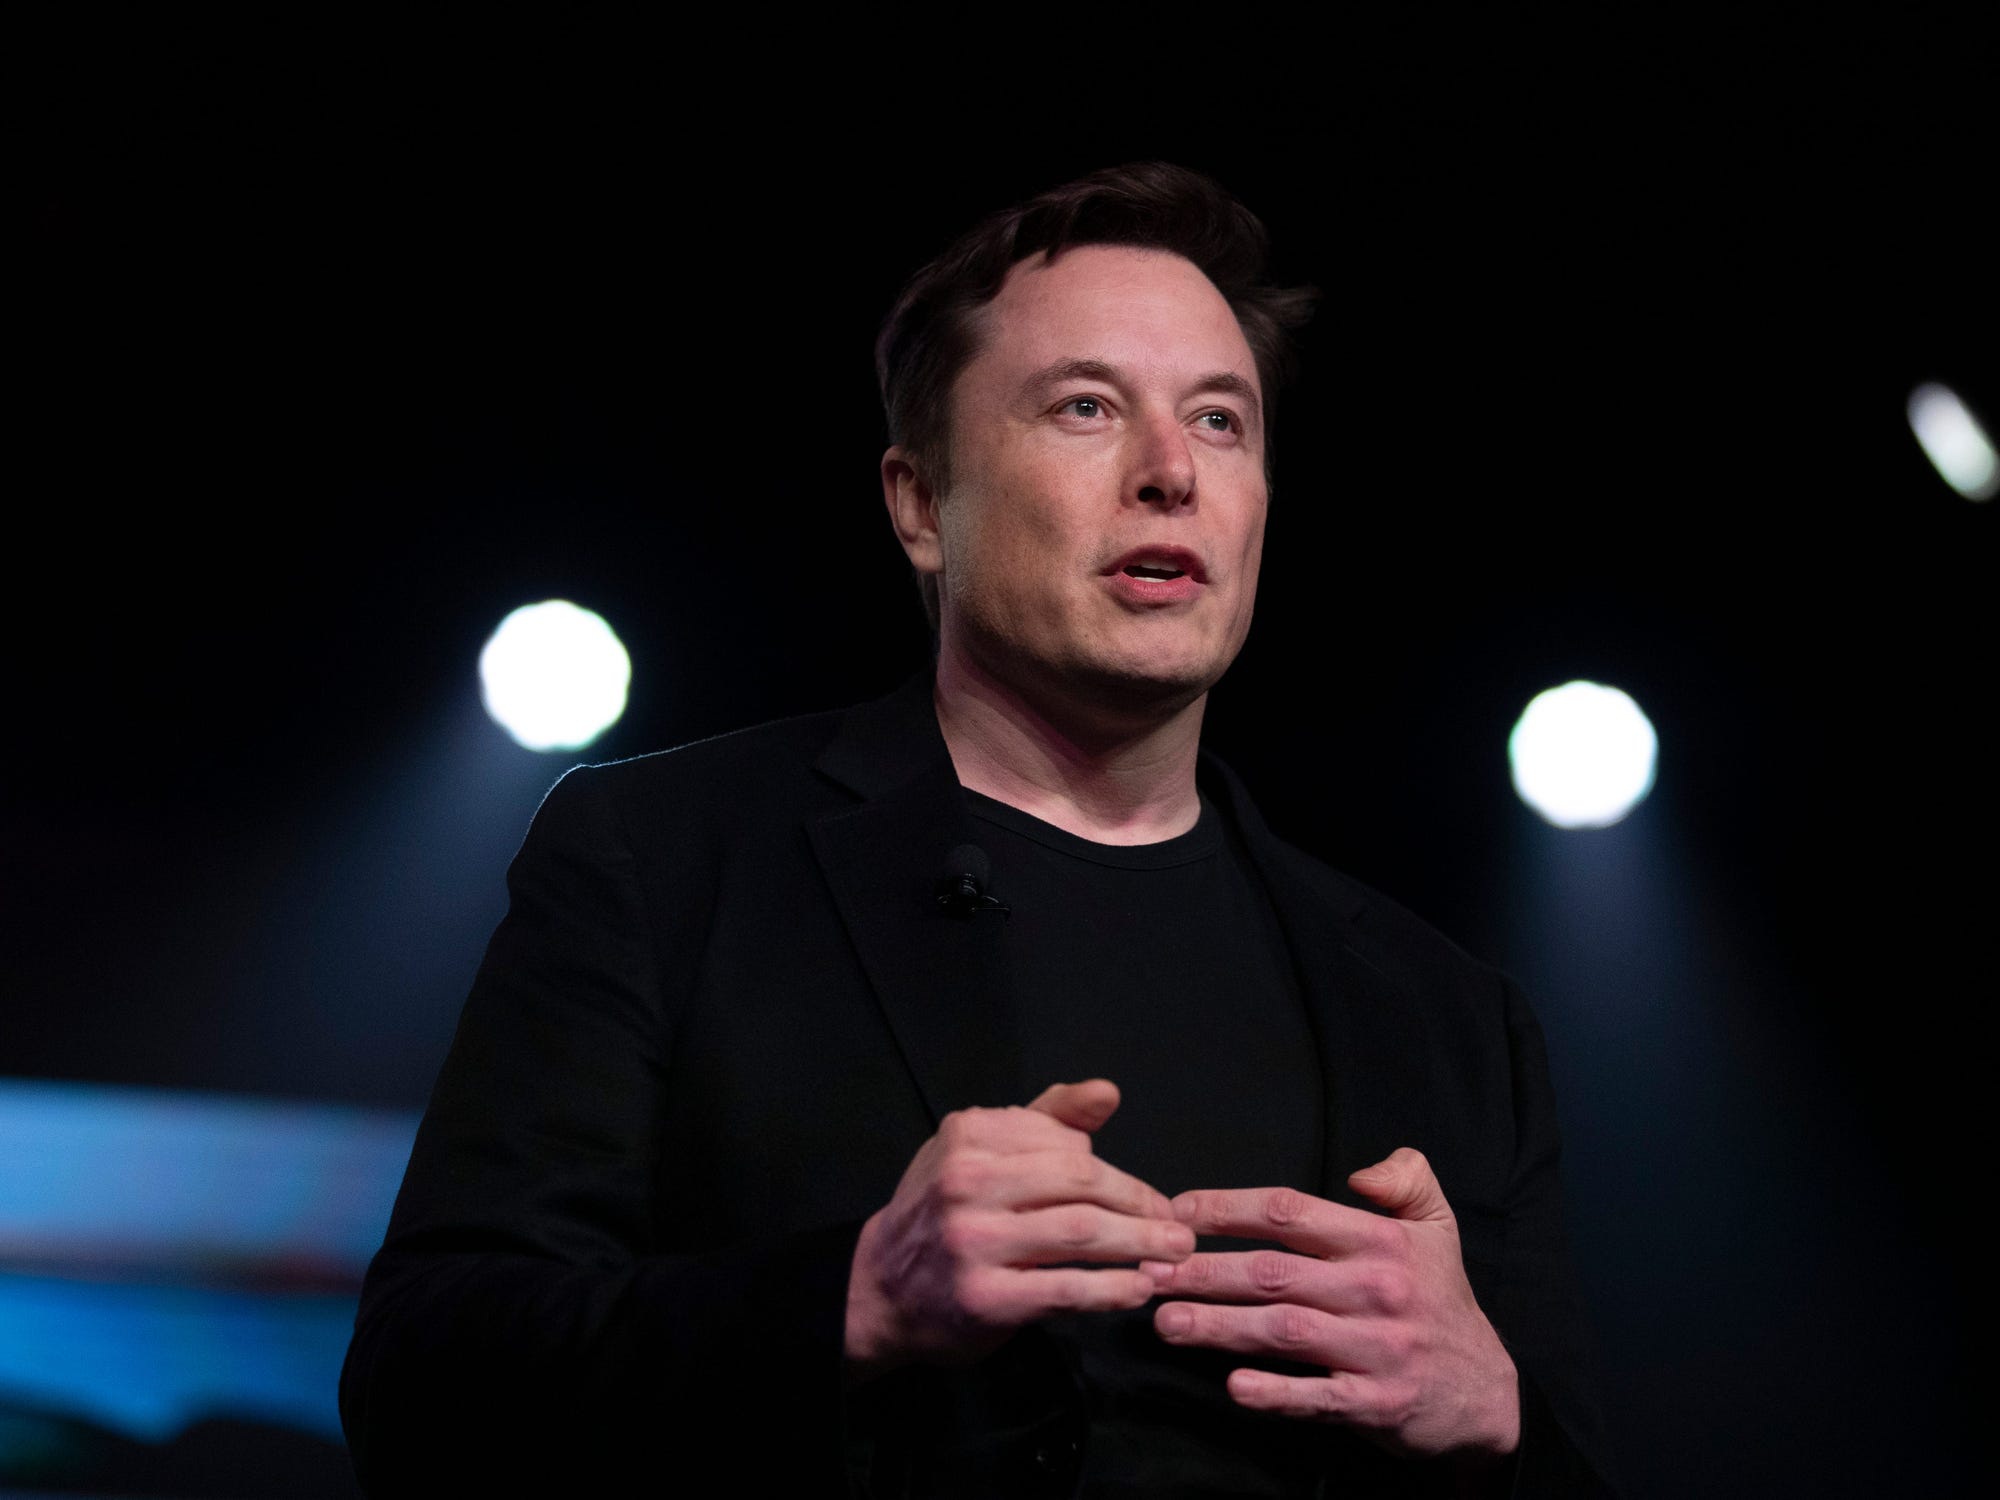 Dính cáo buộc quấy rối tình dục, tài sản Elon Musk tuột mốc 200 tỷ USD - Ảnh 1.